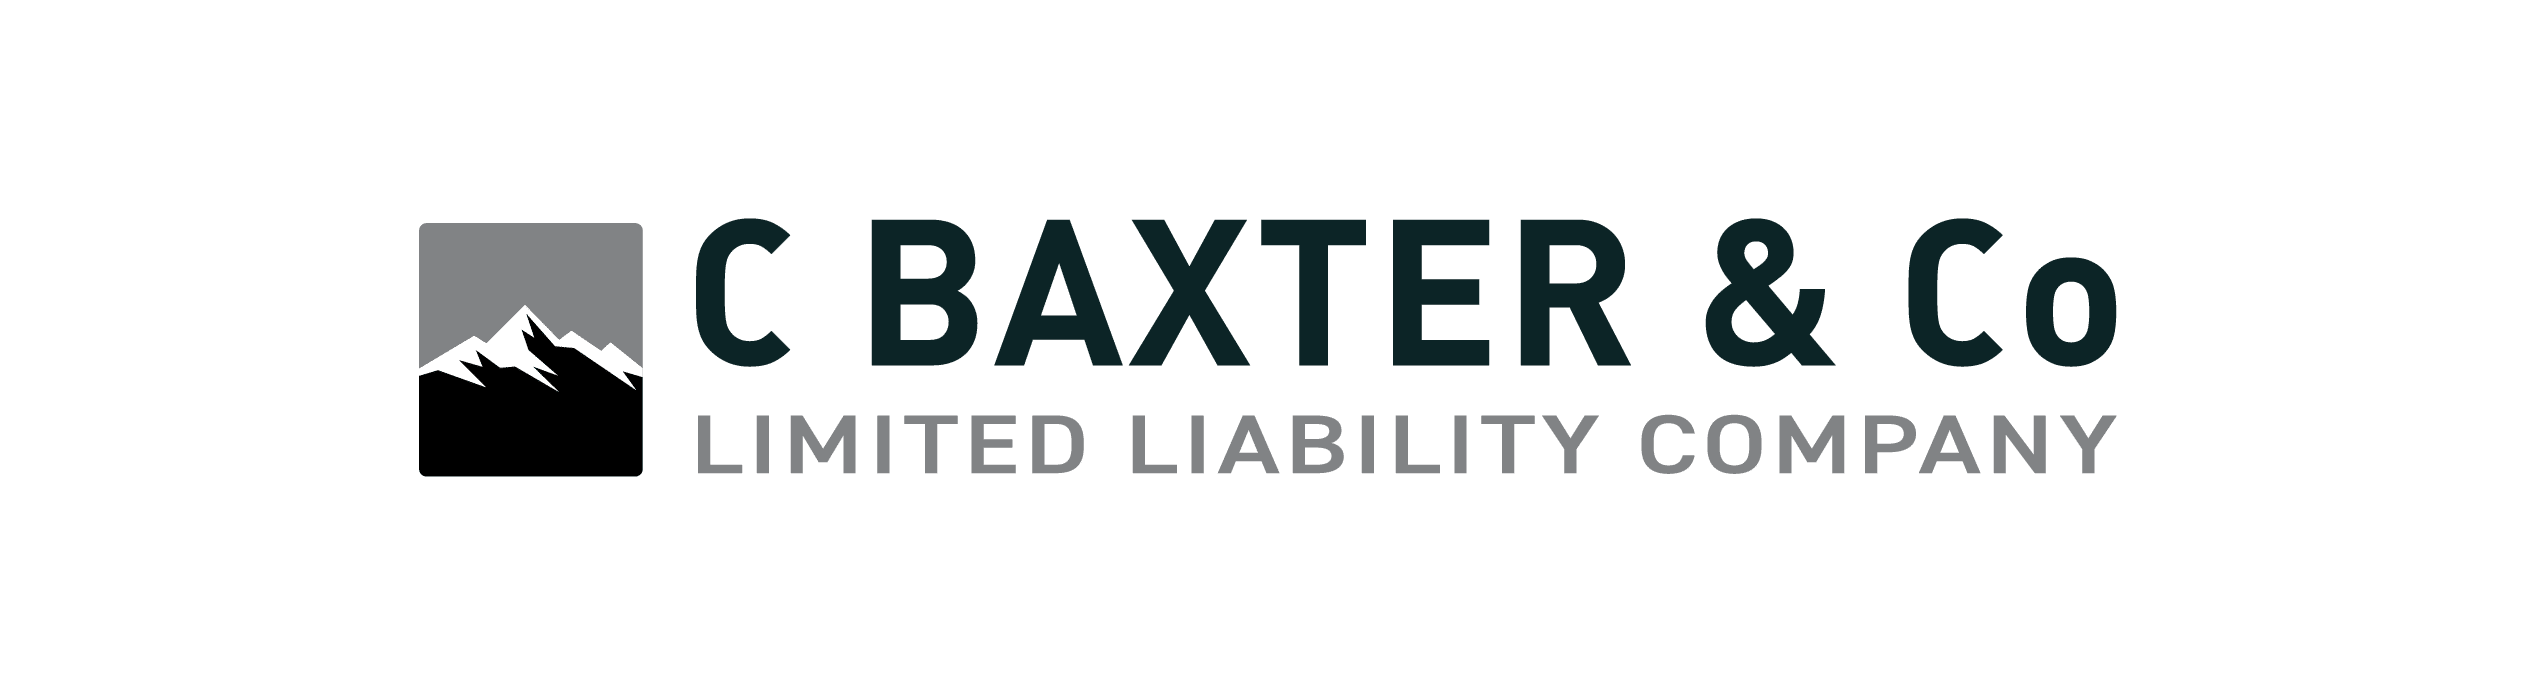 C Baxter & Co